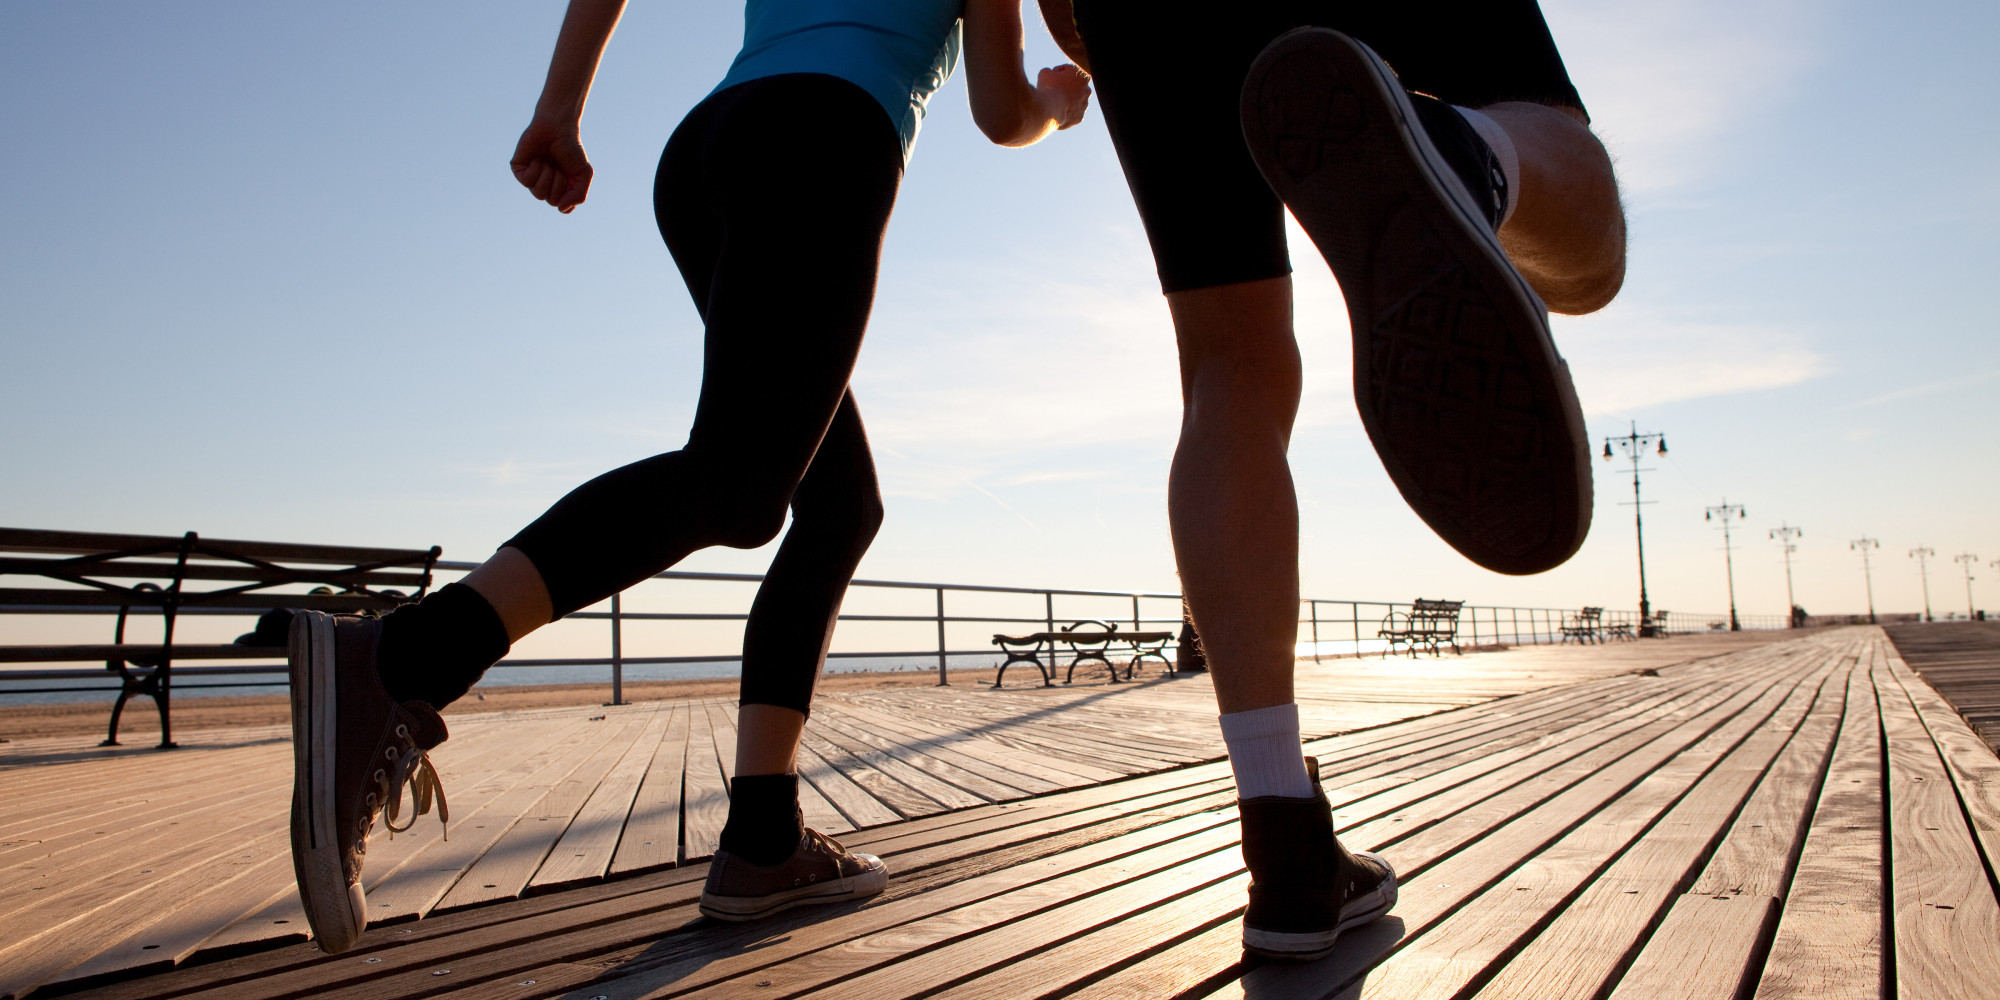 Με τη γυμναστική μπορείτε να πάτε κόντρα στα γονίδια της παχυσαρκίας